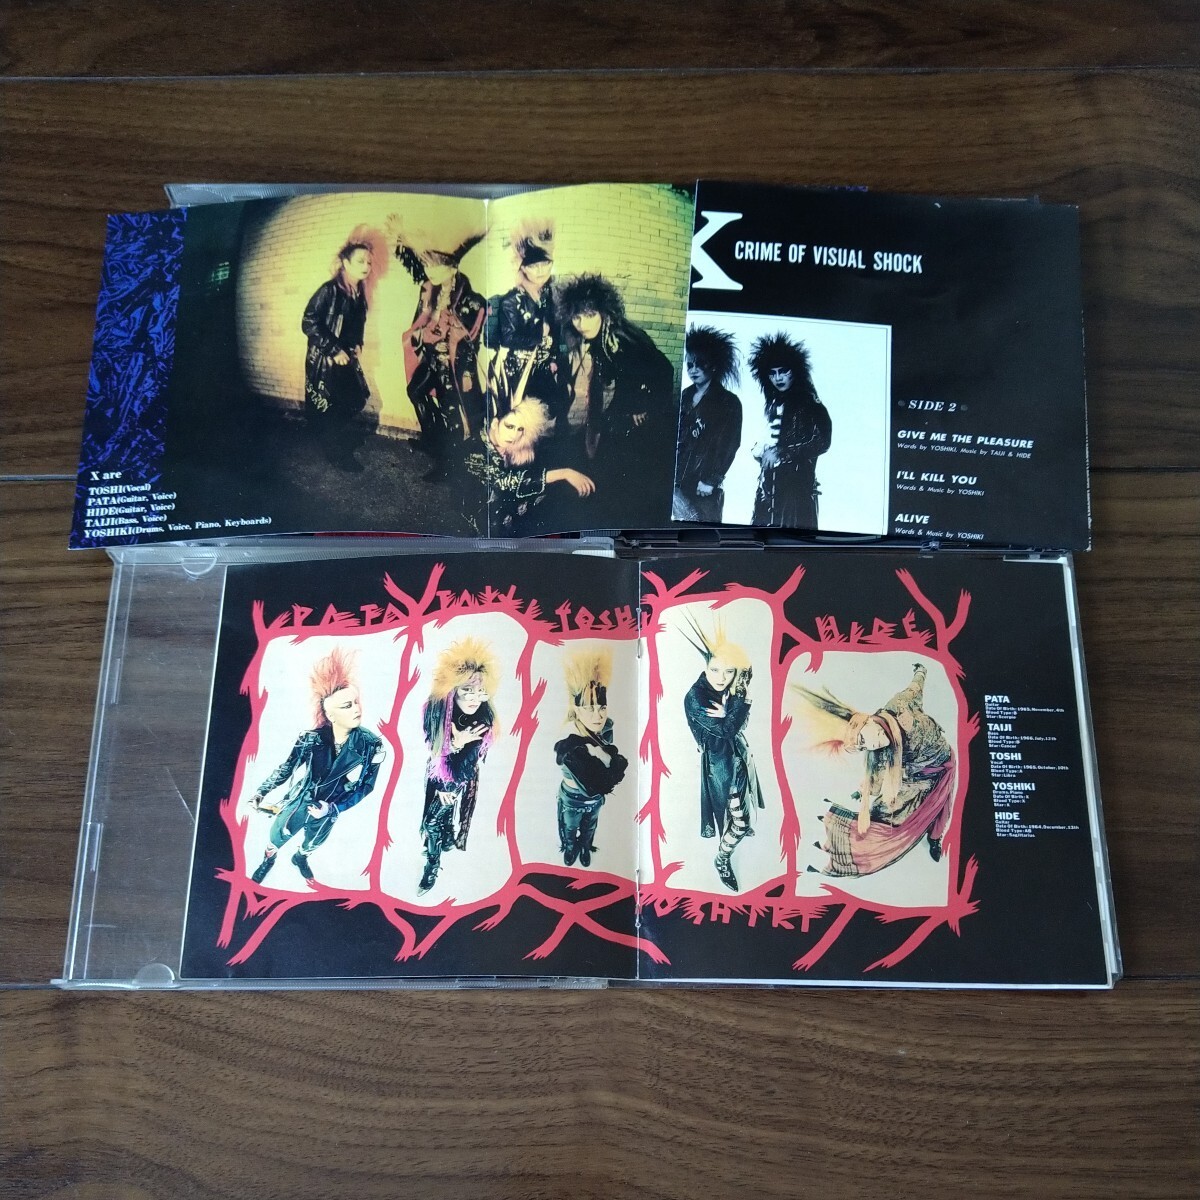 【送料無料】X JAPAN CDアルバム 4タイトルセット VANISHING VISION BLUE BLOOD Jealousy DAHLIA エックスジャパン/ジェラシー/ダリア